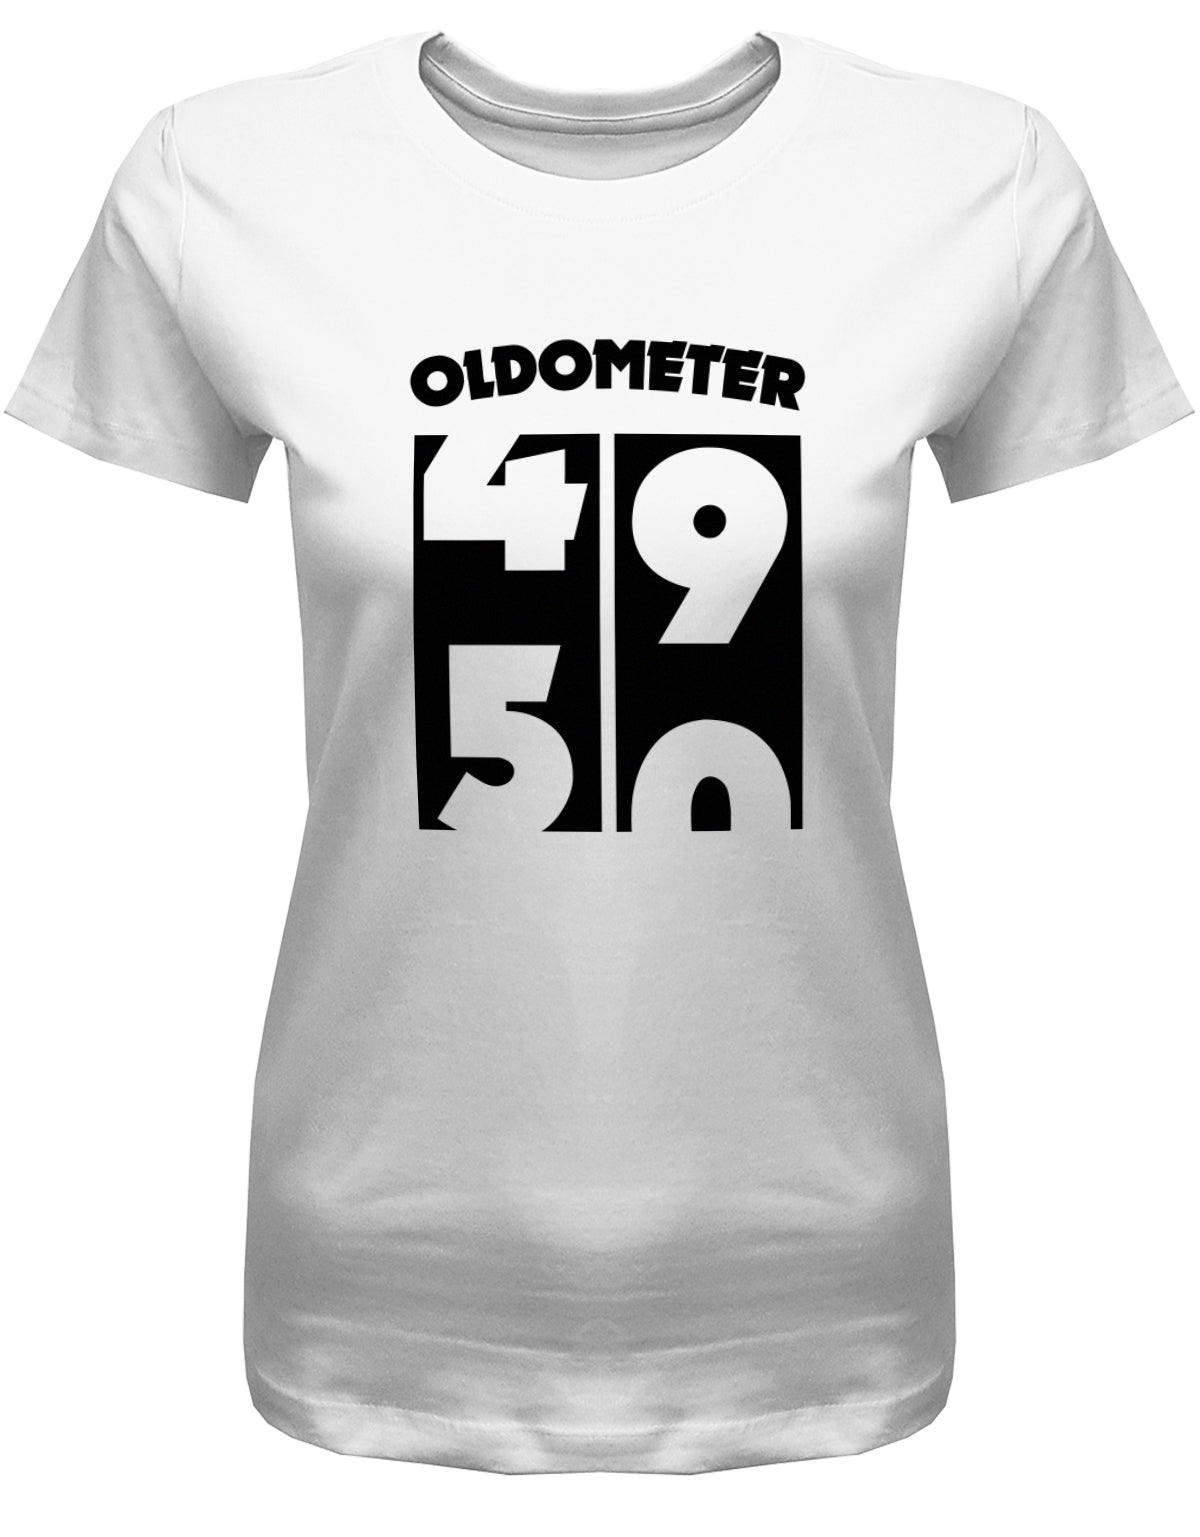 Lustiges T-Shirt zum 50. Geburtstag für die Frau Bedruckt mit Oldometer Wechsel von 49 auf 50 Jahre. Weiss